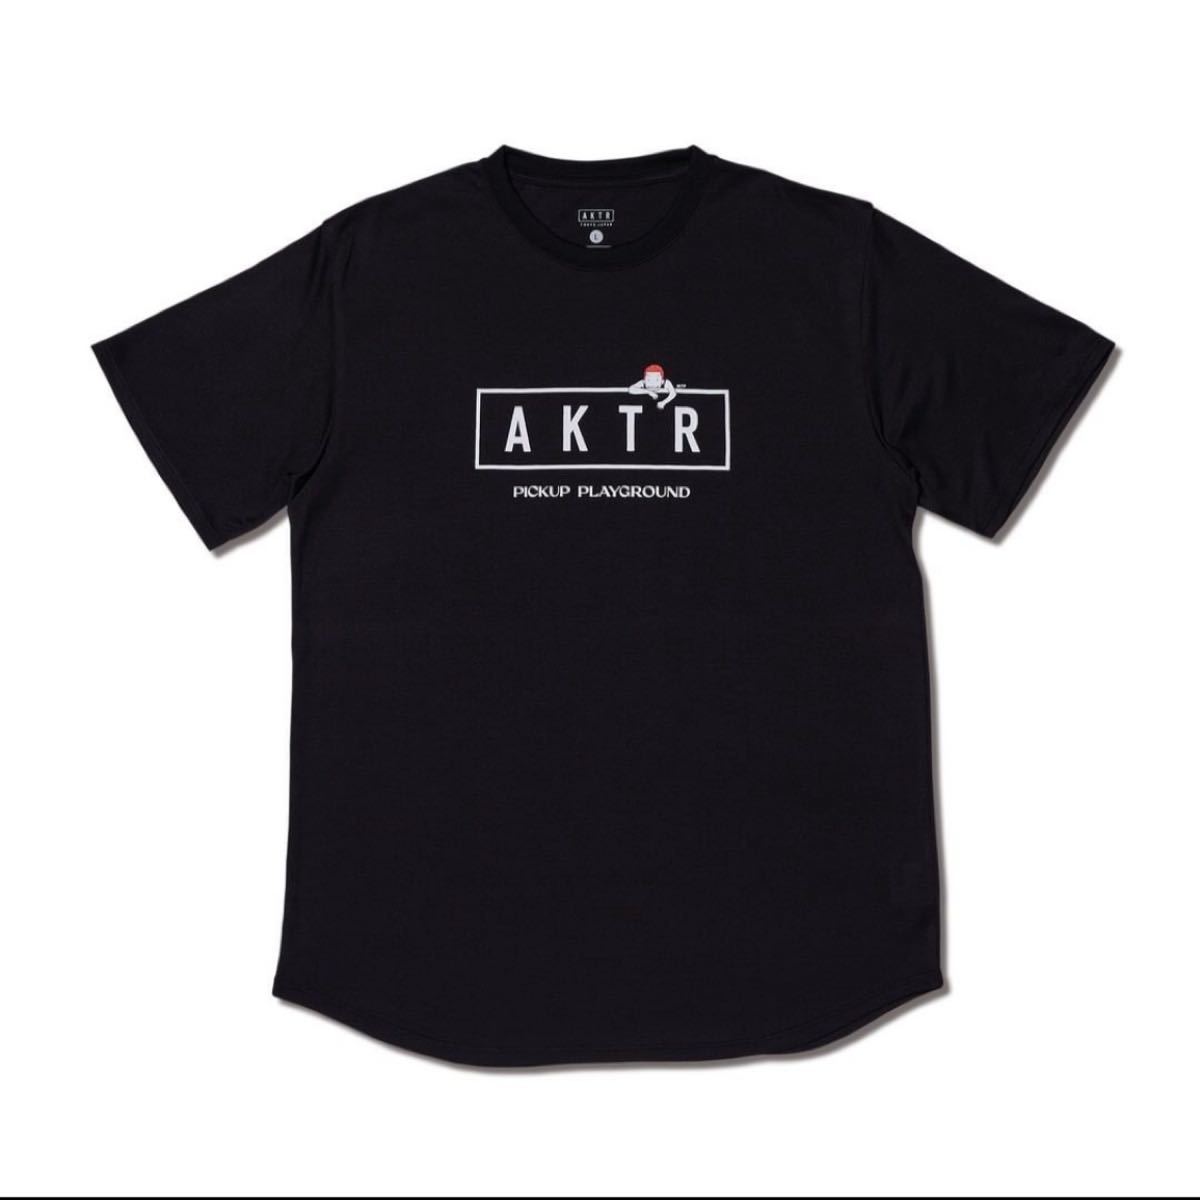 保存版】 黒/XLスラムダンク TEE SPORTS S/S PUP AKTR - Tシャツ 